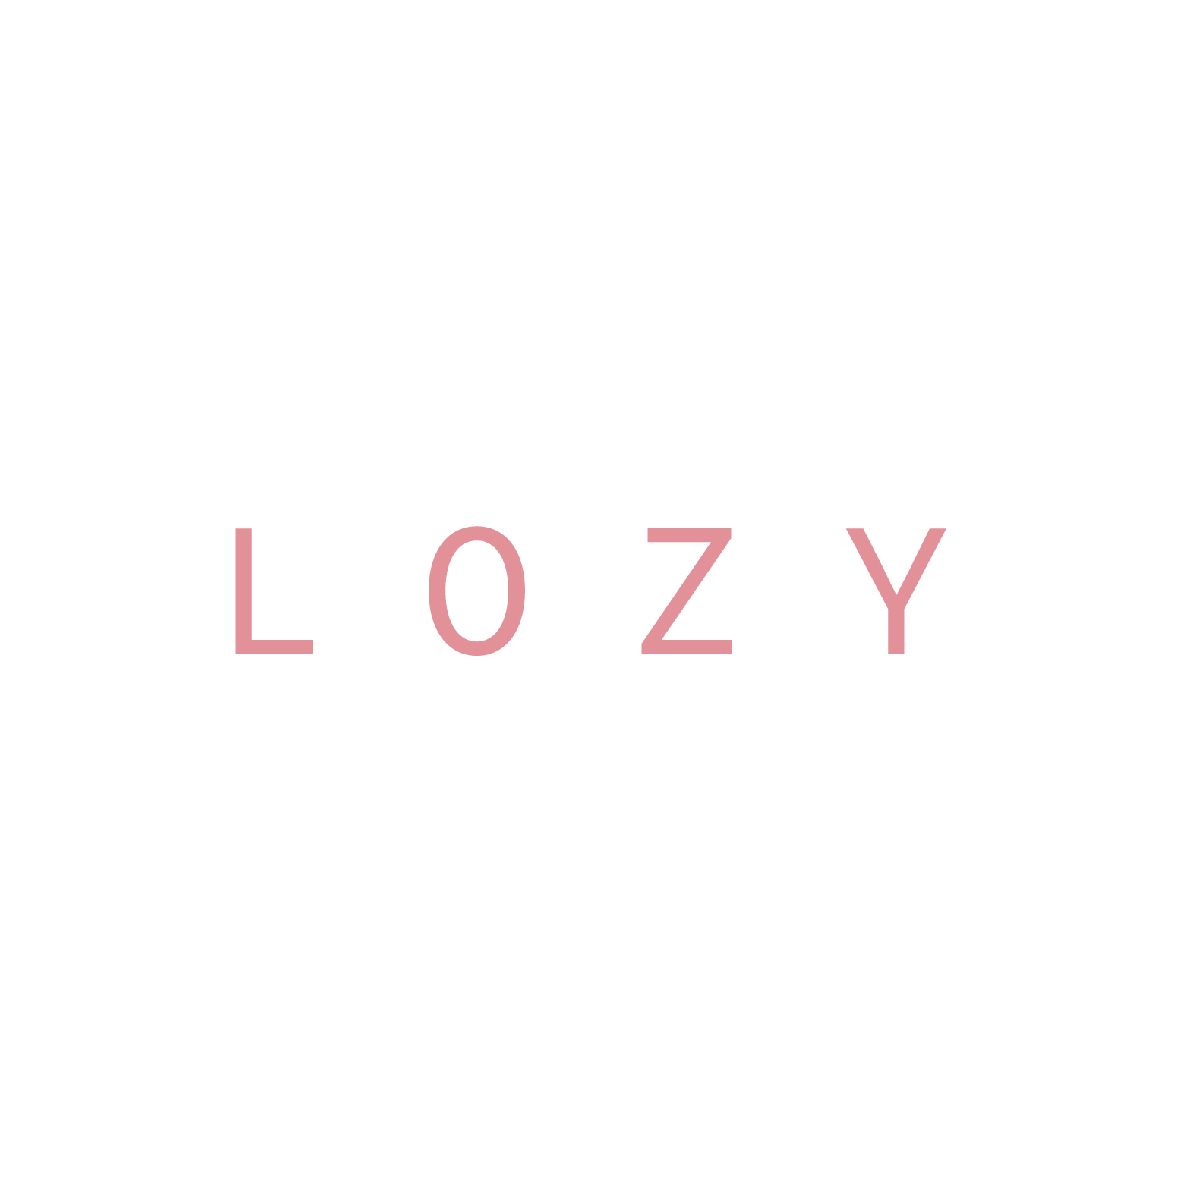 Lozy